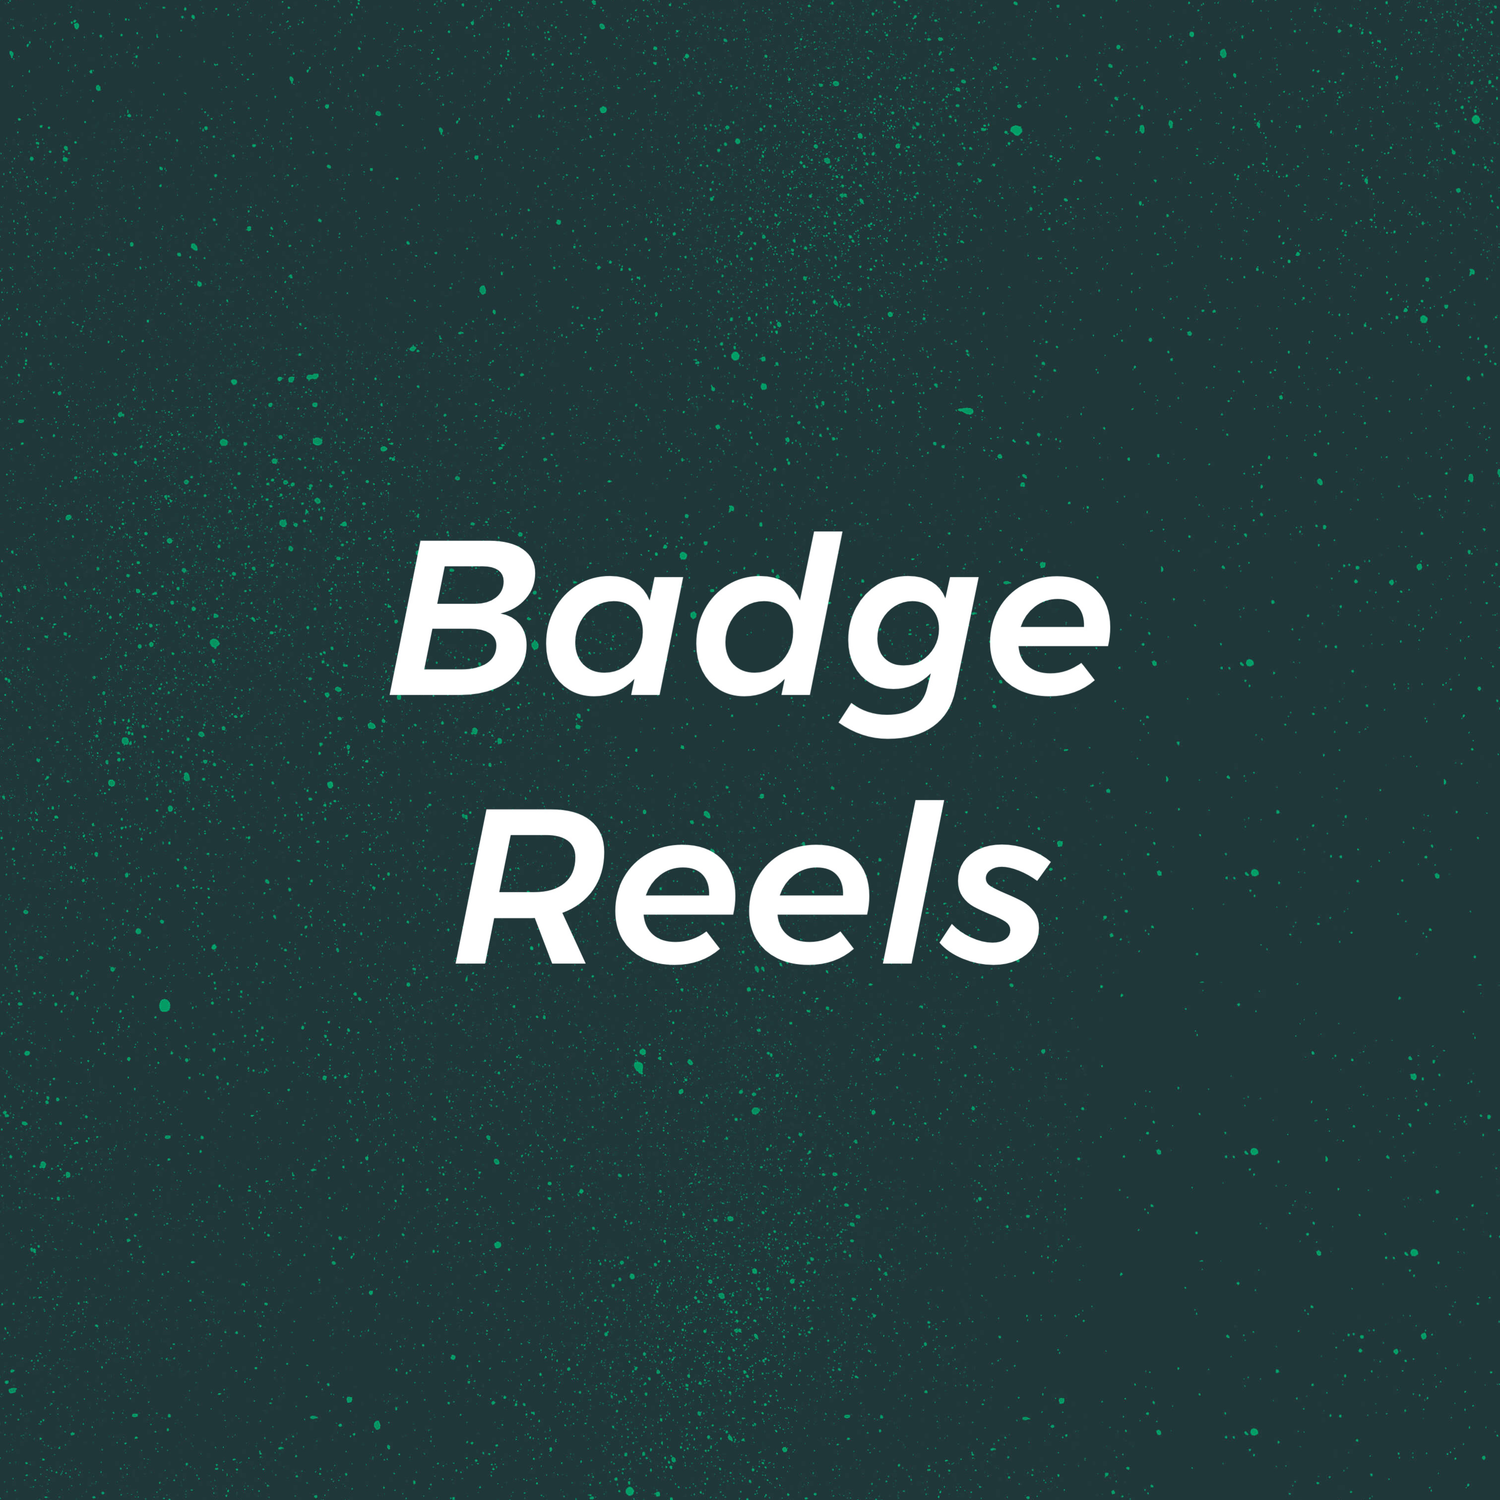 Badge Reels